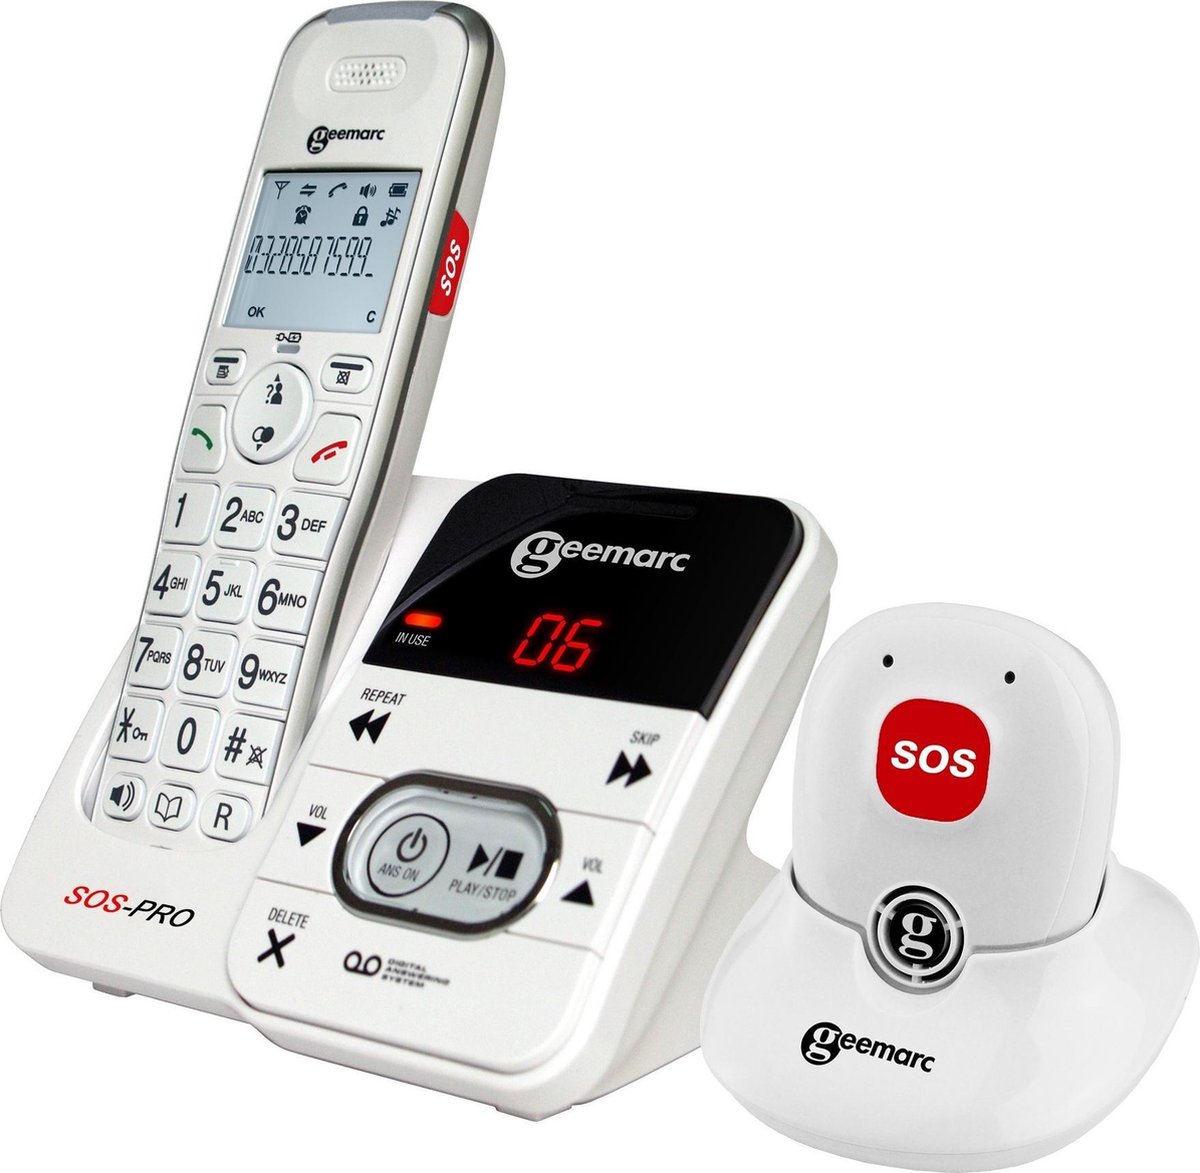 GEEMARC AmpliDECT 295 SOS Pro draadloze telefoon met 30 dB GELUIDSVERSTERKING voor SLECHTHORENDEN. Met ALARM Pendant en BEANTWOORDER